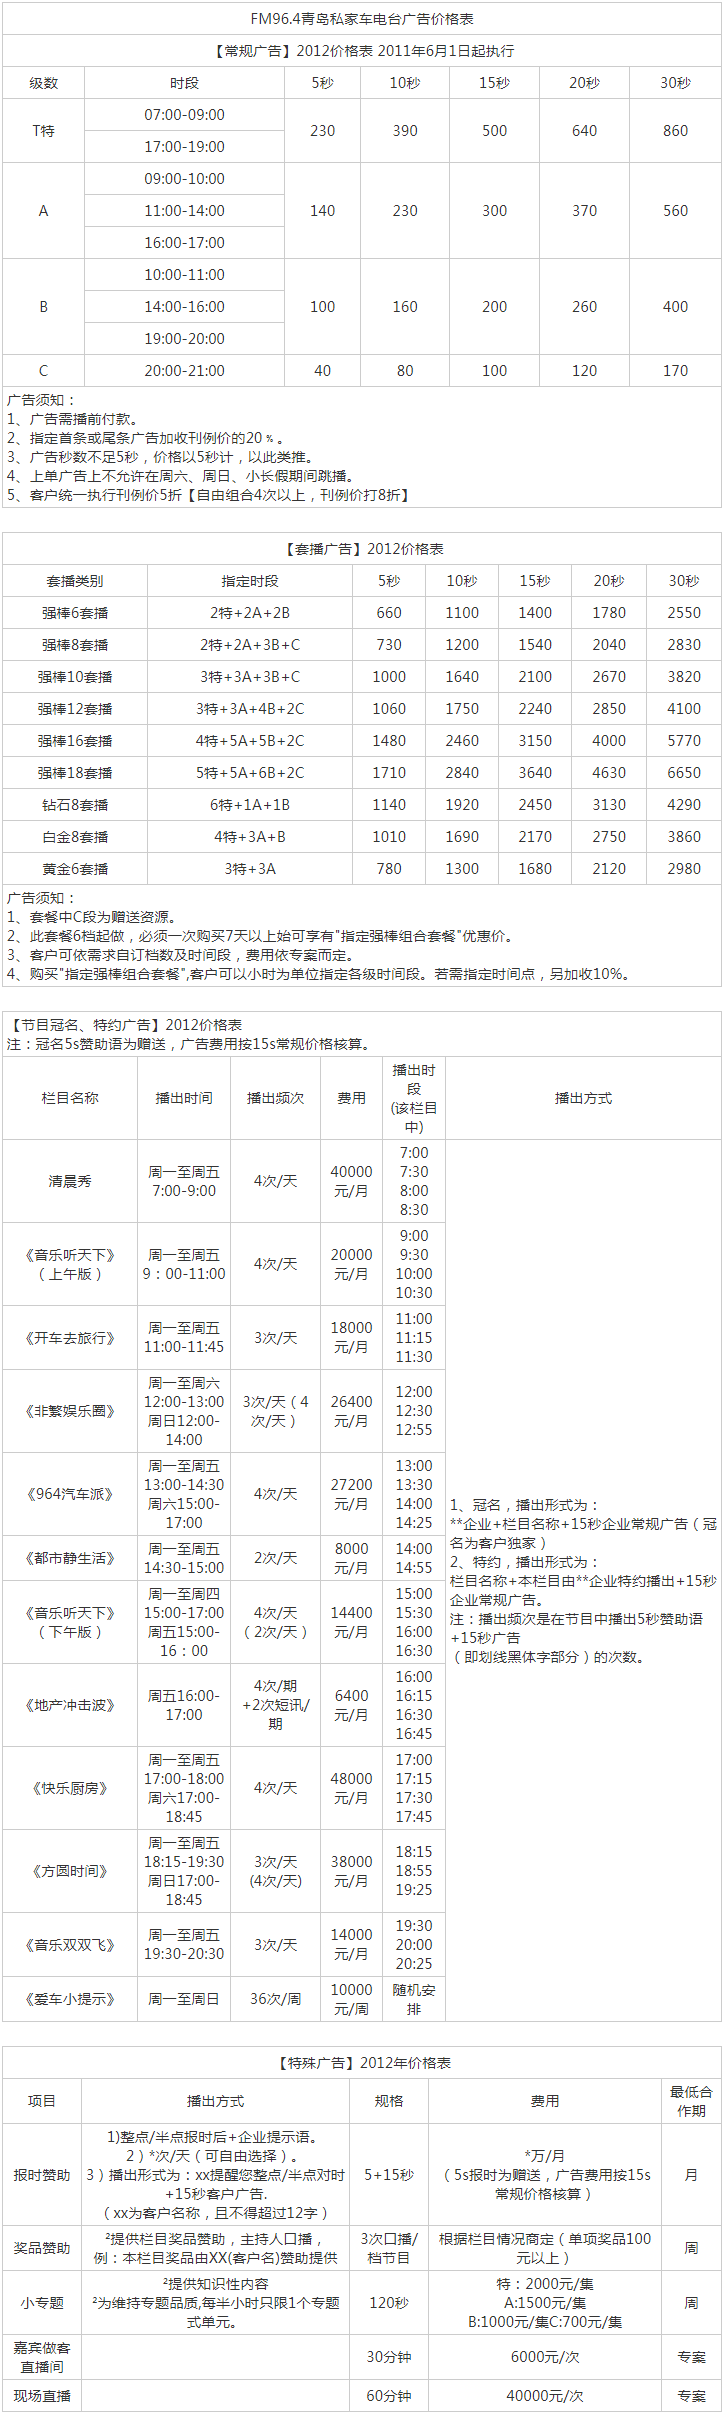 2012青岛人民广播电台私家车电台 FM96.4广告报价表.png